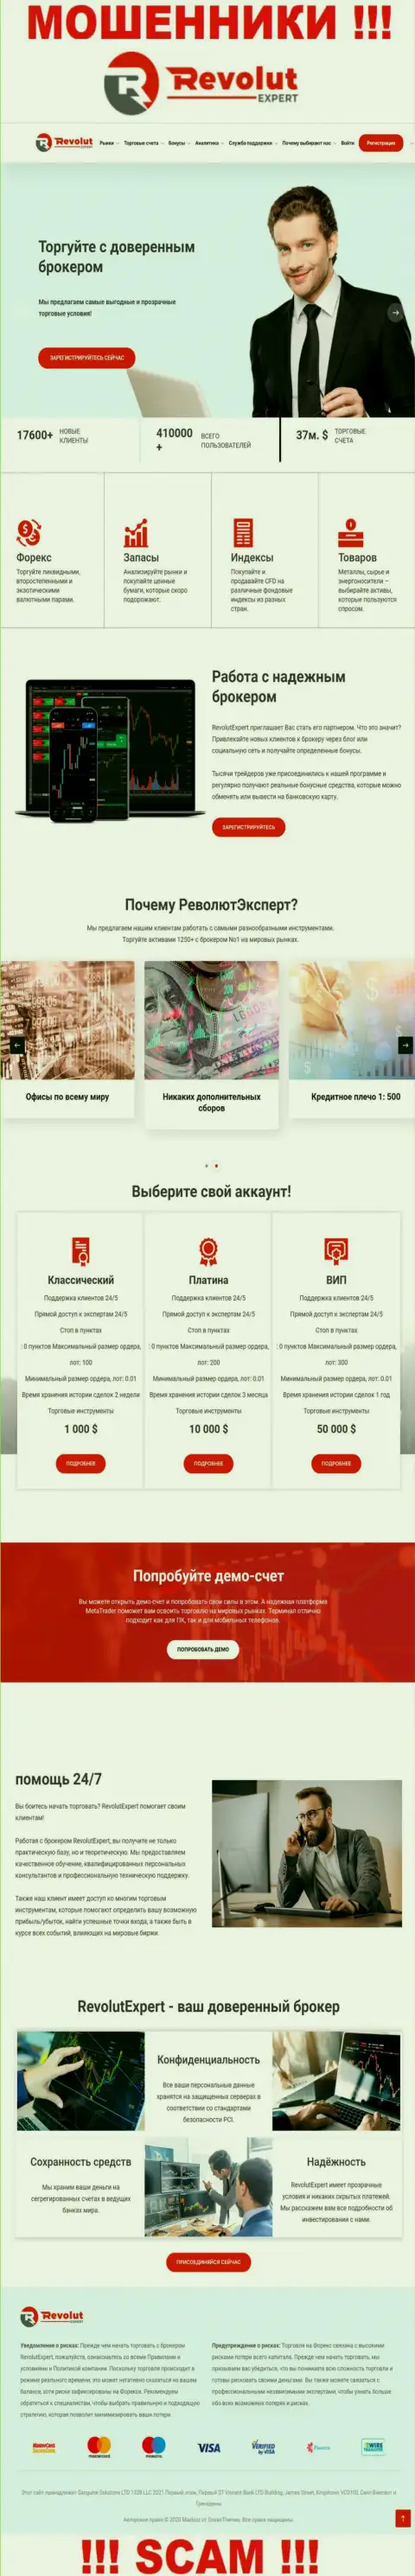 Внешний вид официального web-портала мошеннической организации Сангин Солюшинс ЛТД